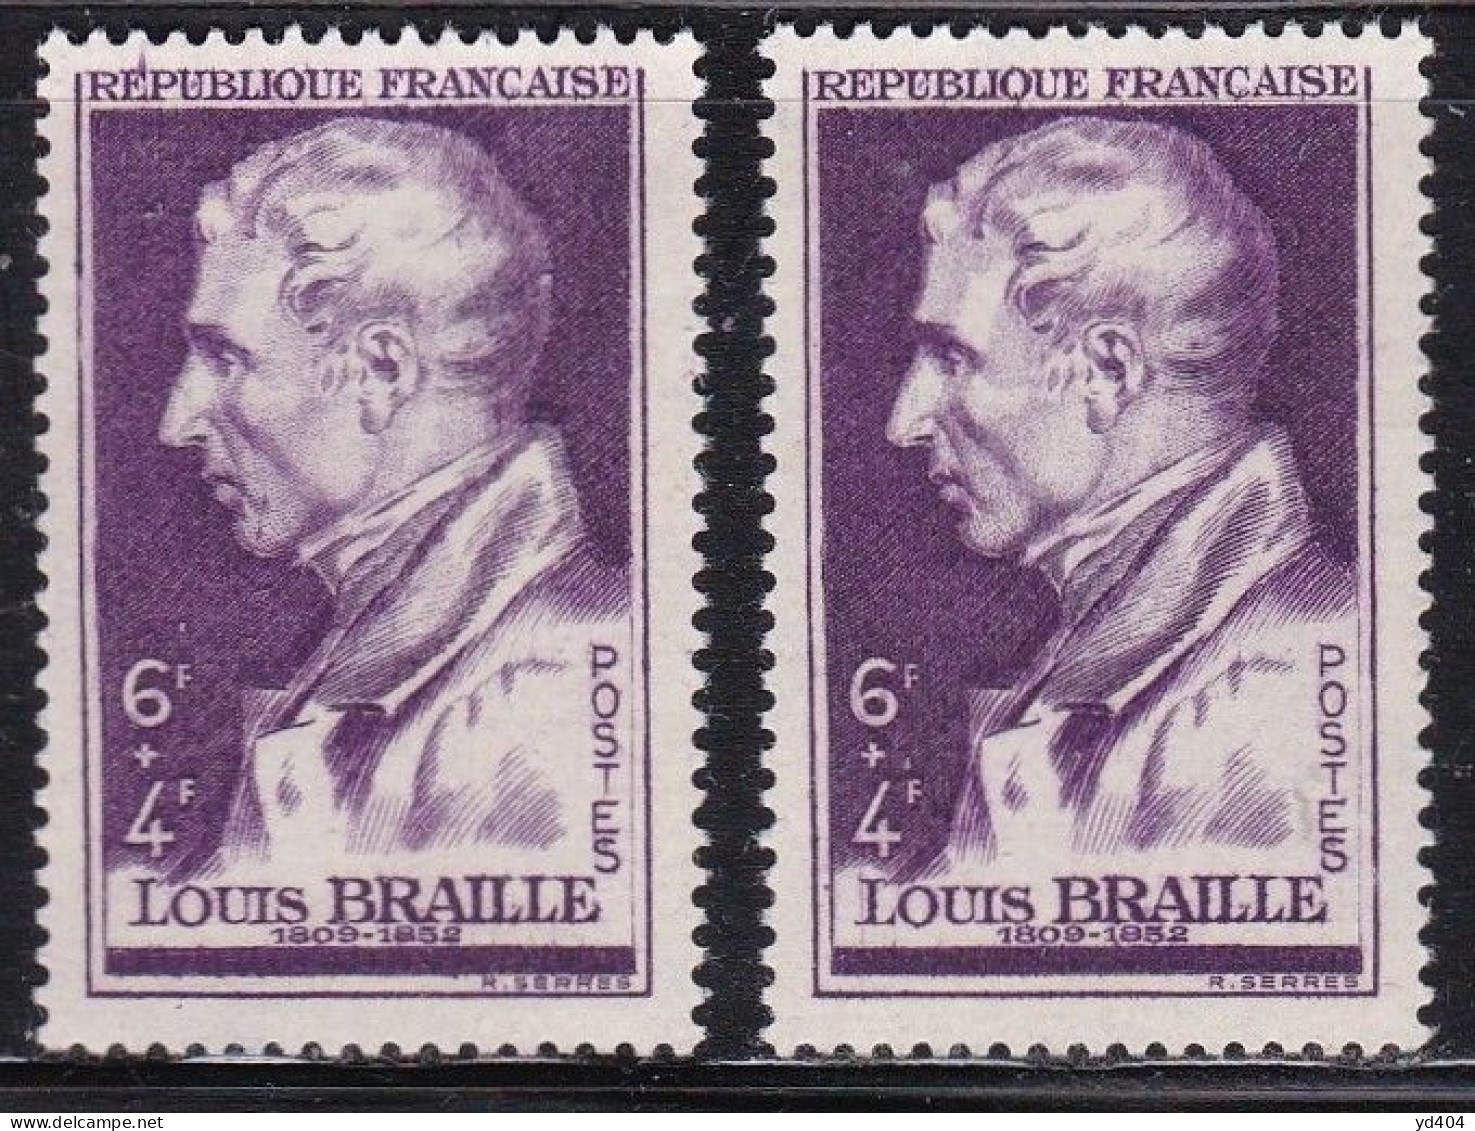 FR7143 - FRANCE – 1947 – L. BRAILLE - Y&T # 793(x2) MNH - Ungebraucht